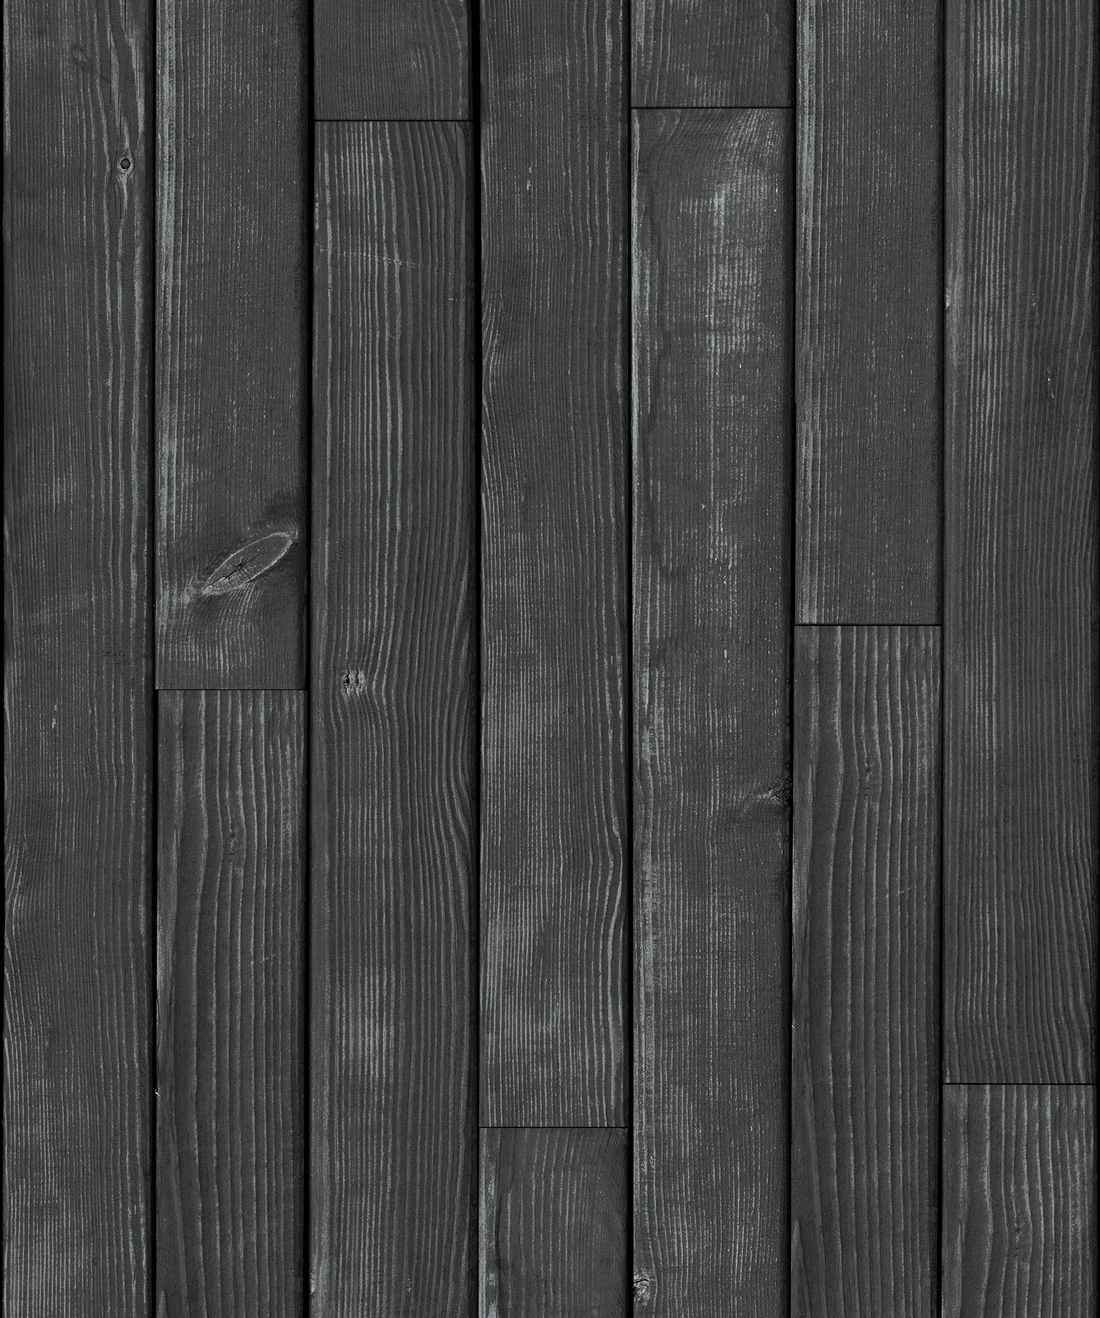 dark wood floor wallpaper